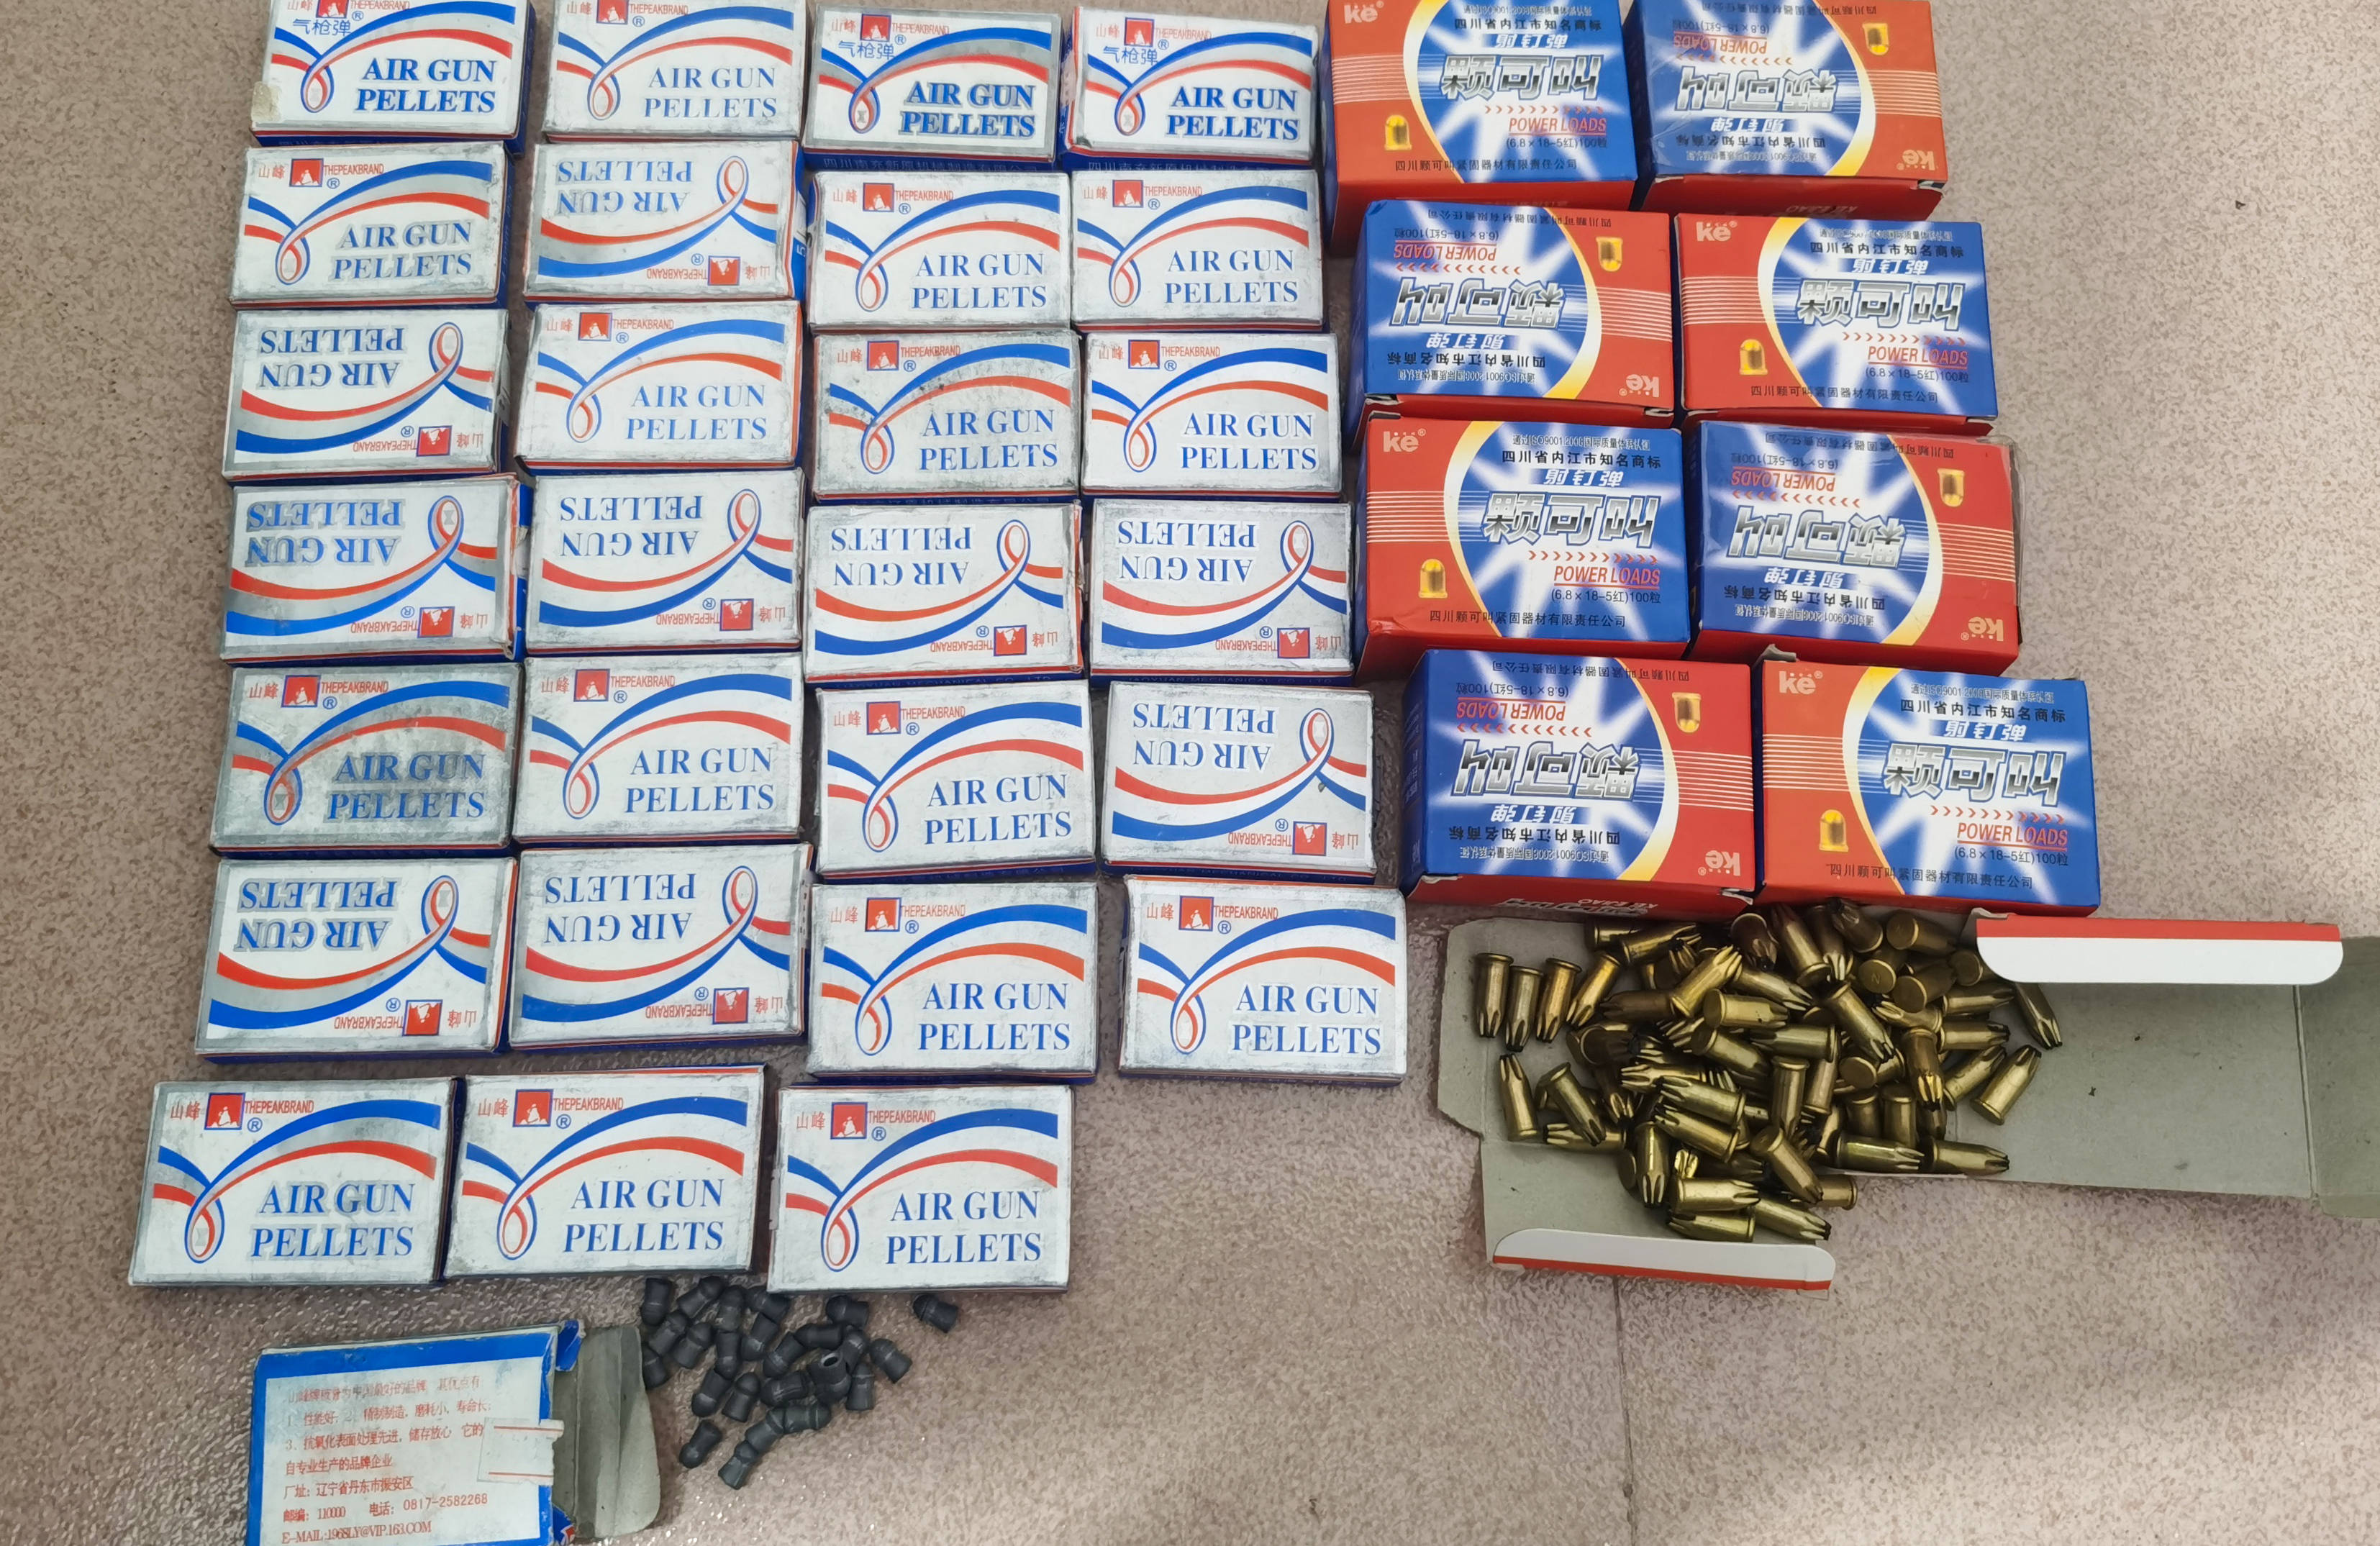 民警经清点,共有包装完整的气枪弹28盒,共1120枚,包装完整的射钉弹9盒